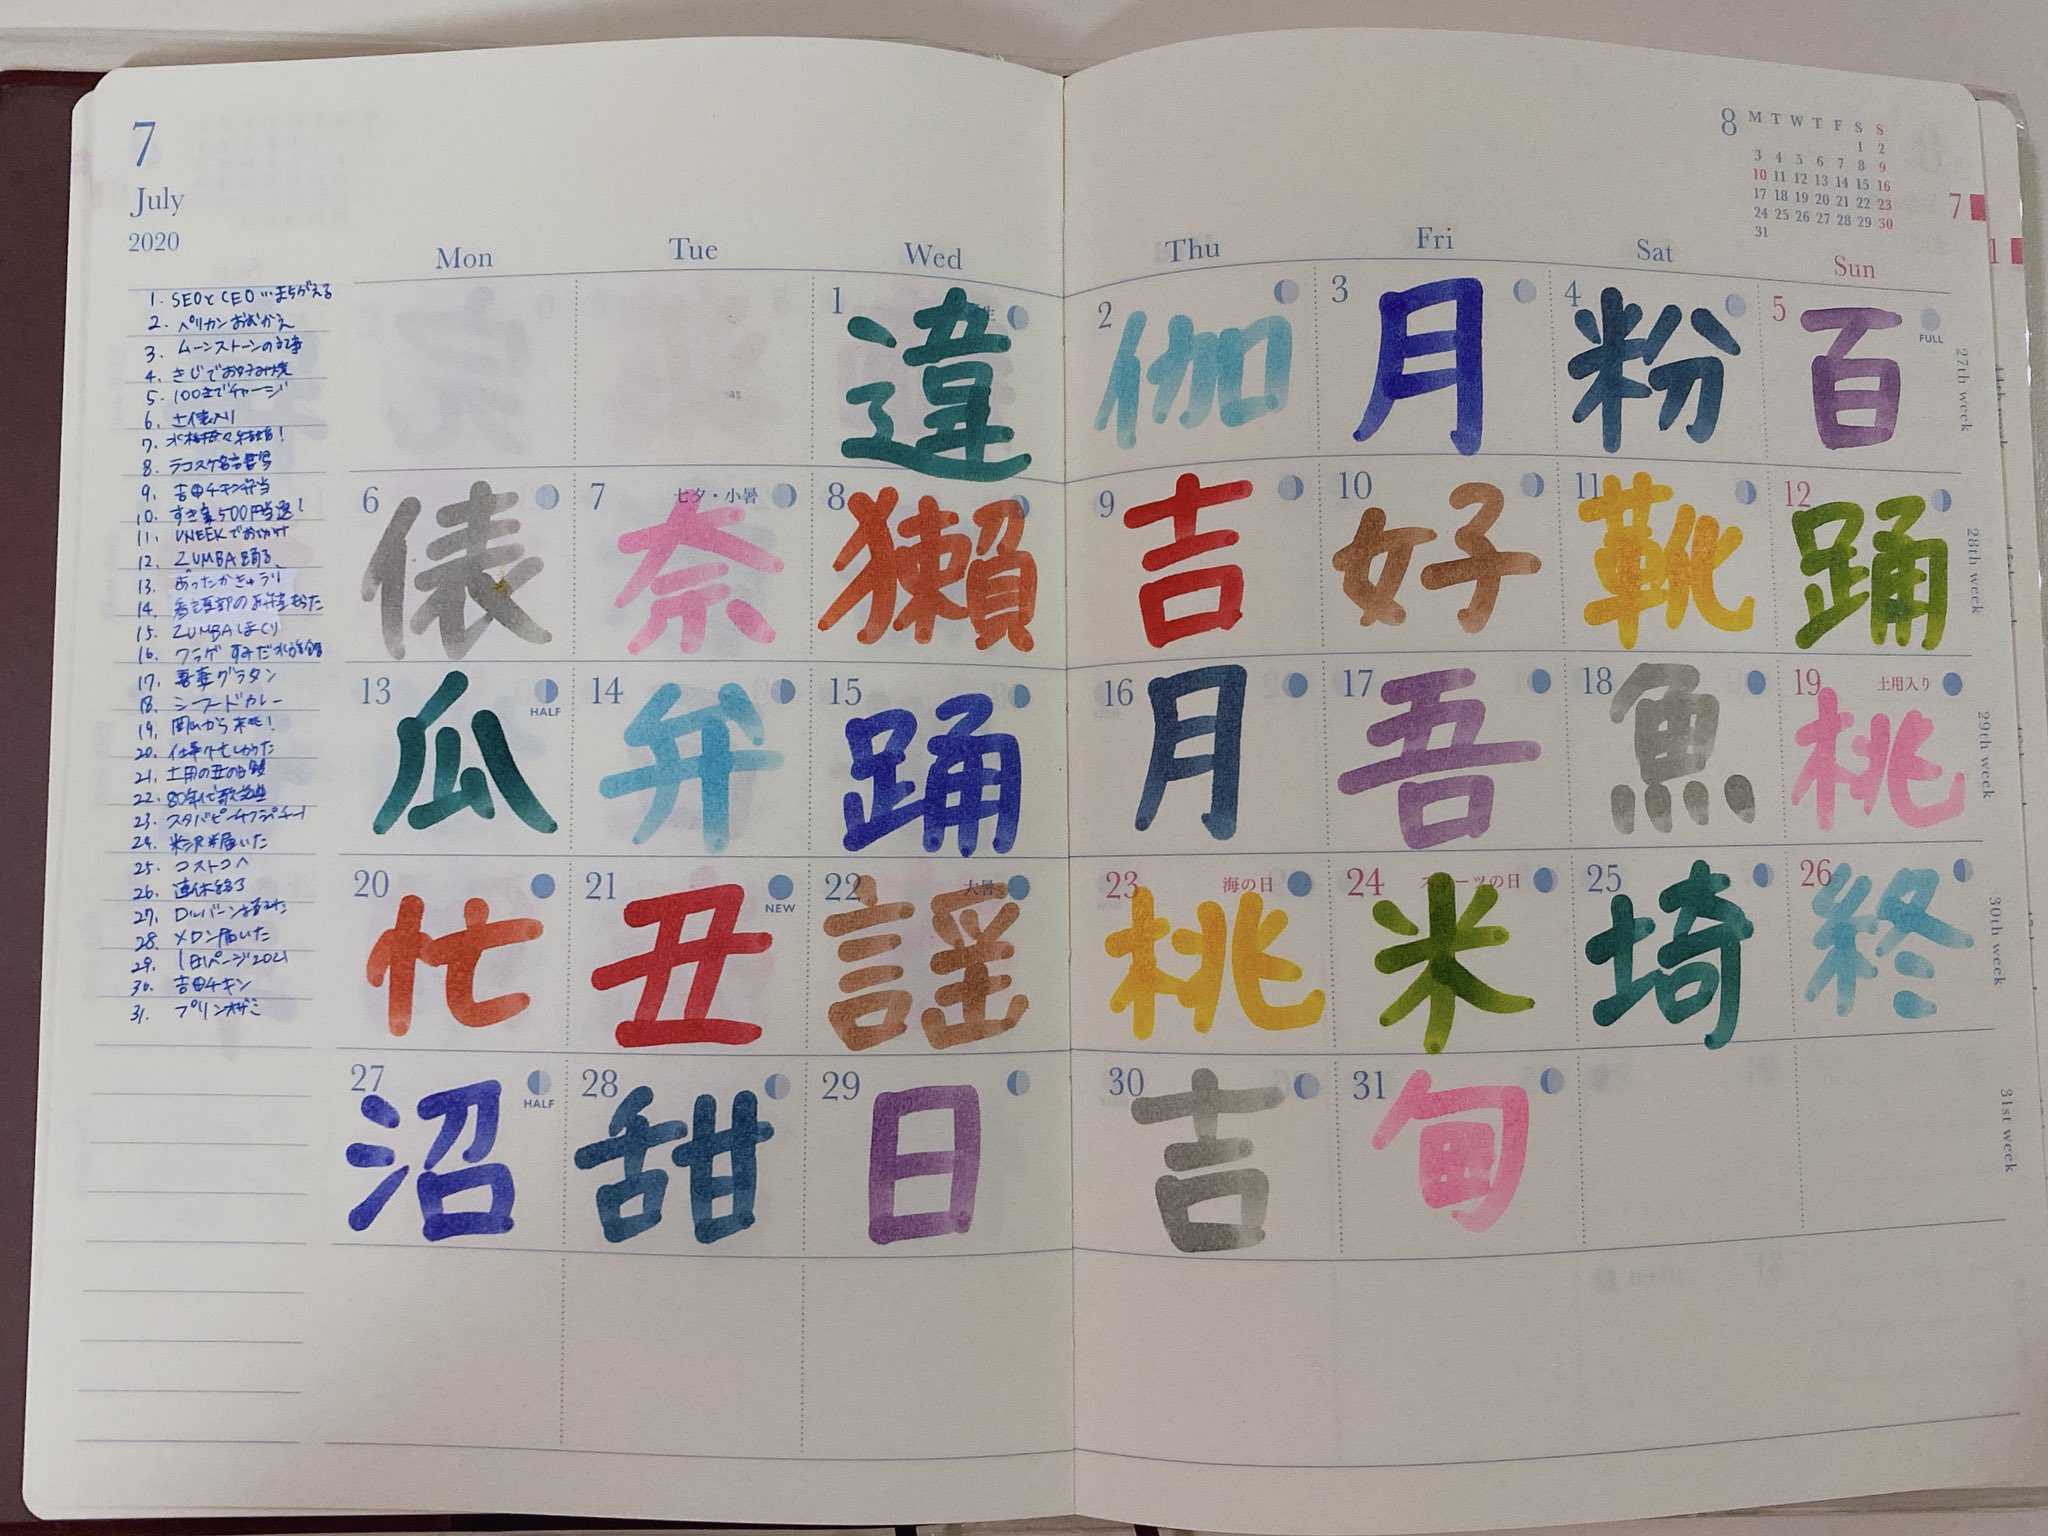 も W い 19 12月の 漢字日記 埋まりました 日の長さを感じる手帳 のmonthly部分でやってます T Co Khgl9bnyf4 Twitter